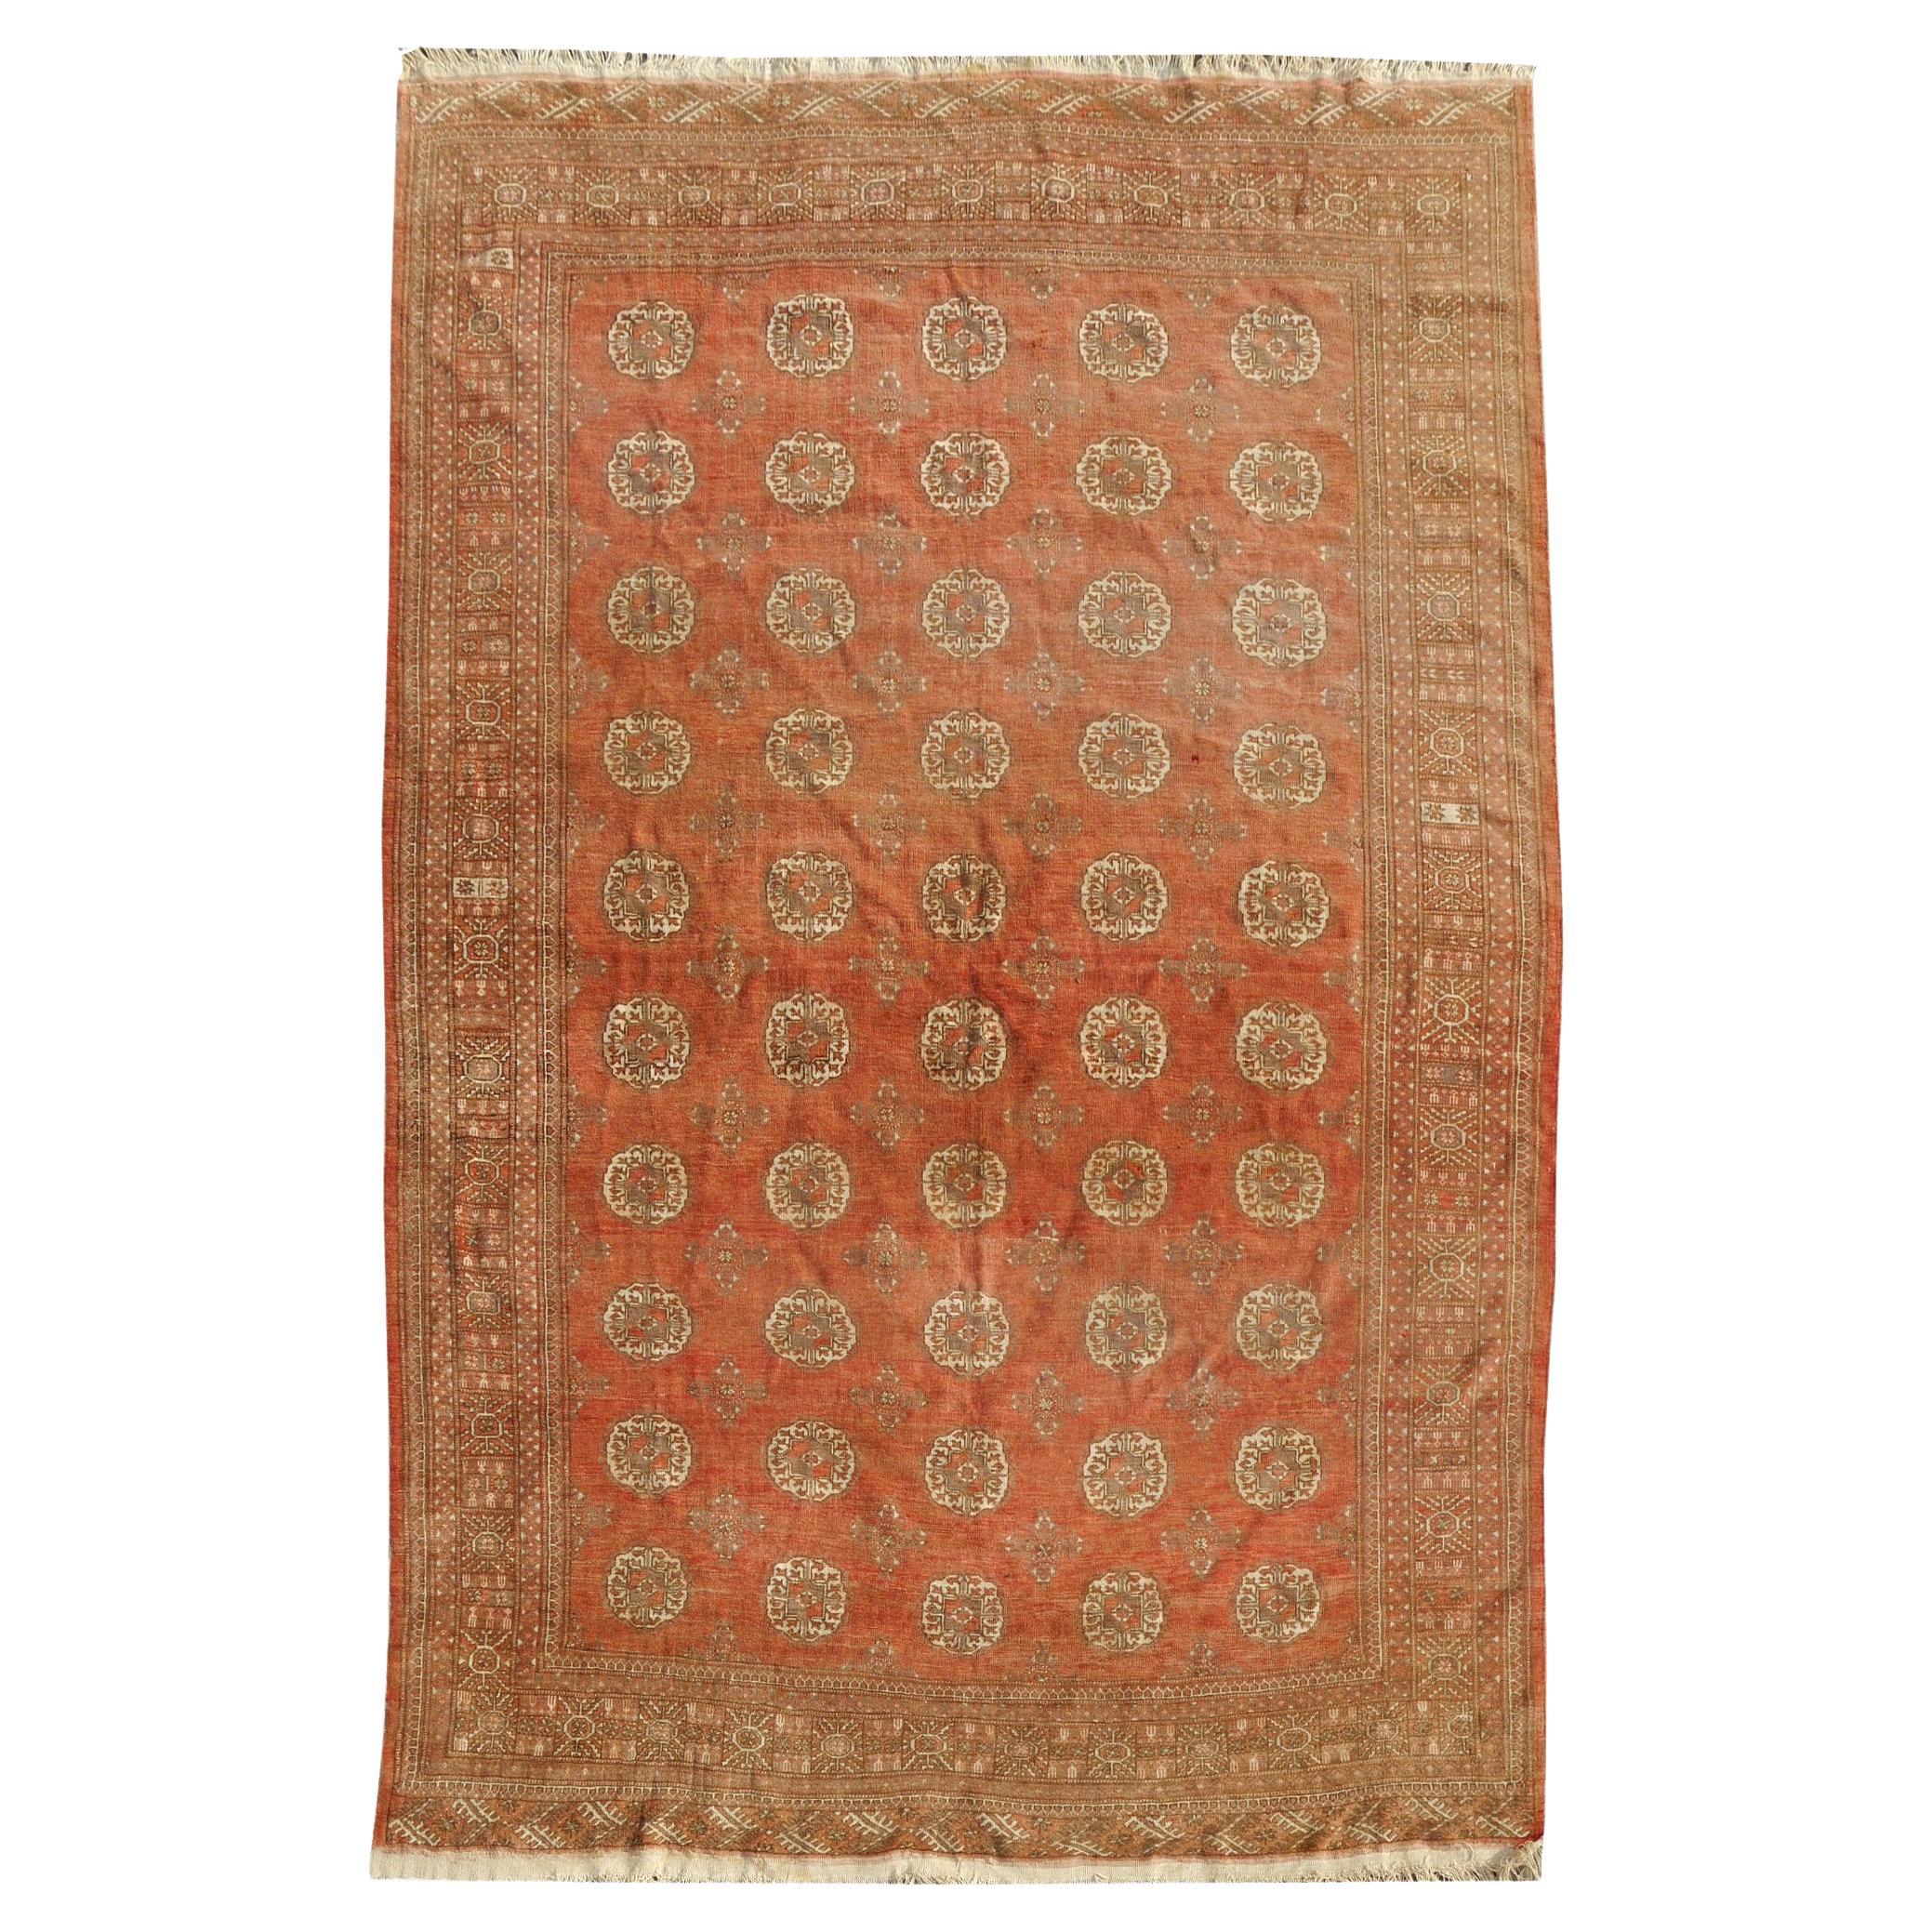 Handgeknüpfter halber antiker Teppich, türkischer Stammeskunst-Stammesteppich, verblasste, niedrige Florstruktur